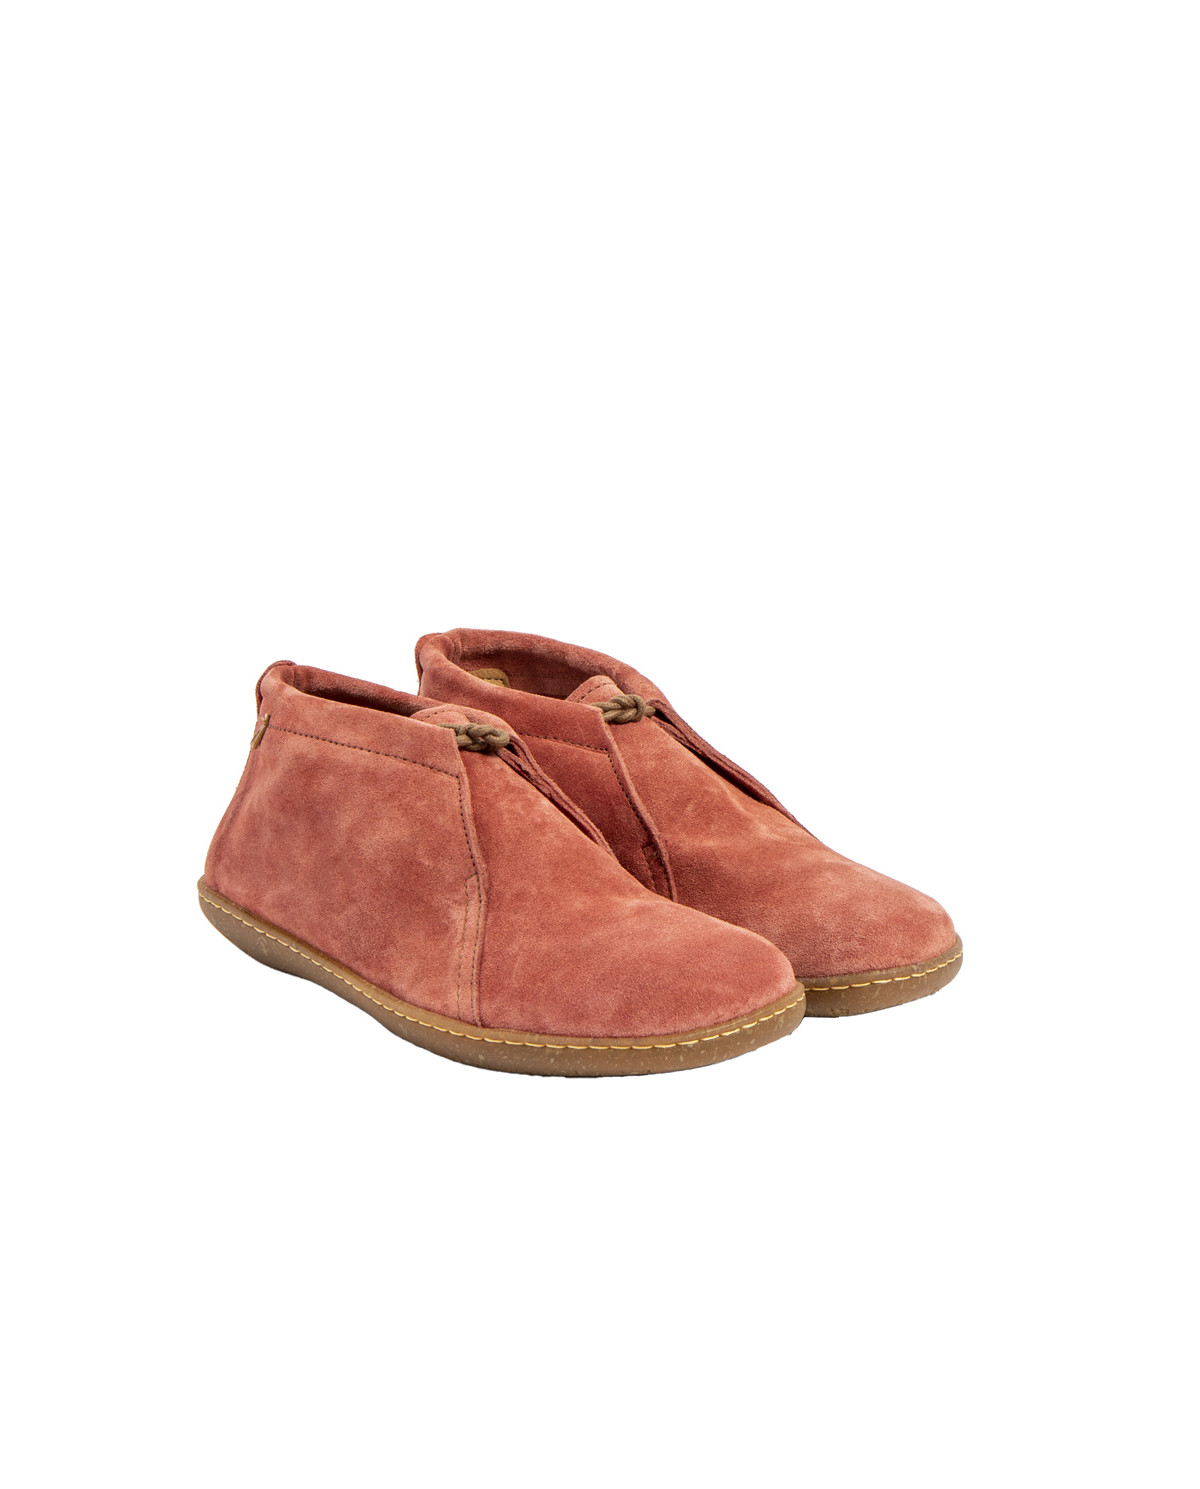 Chaussures confortables lacées en daim - Rose - El naturalista